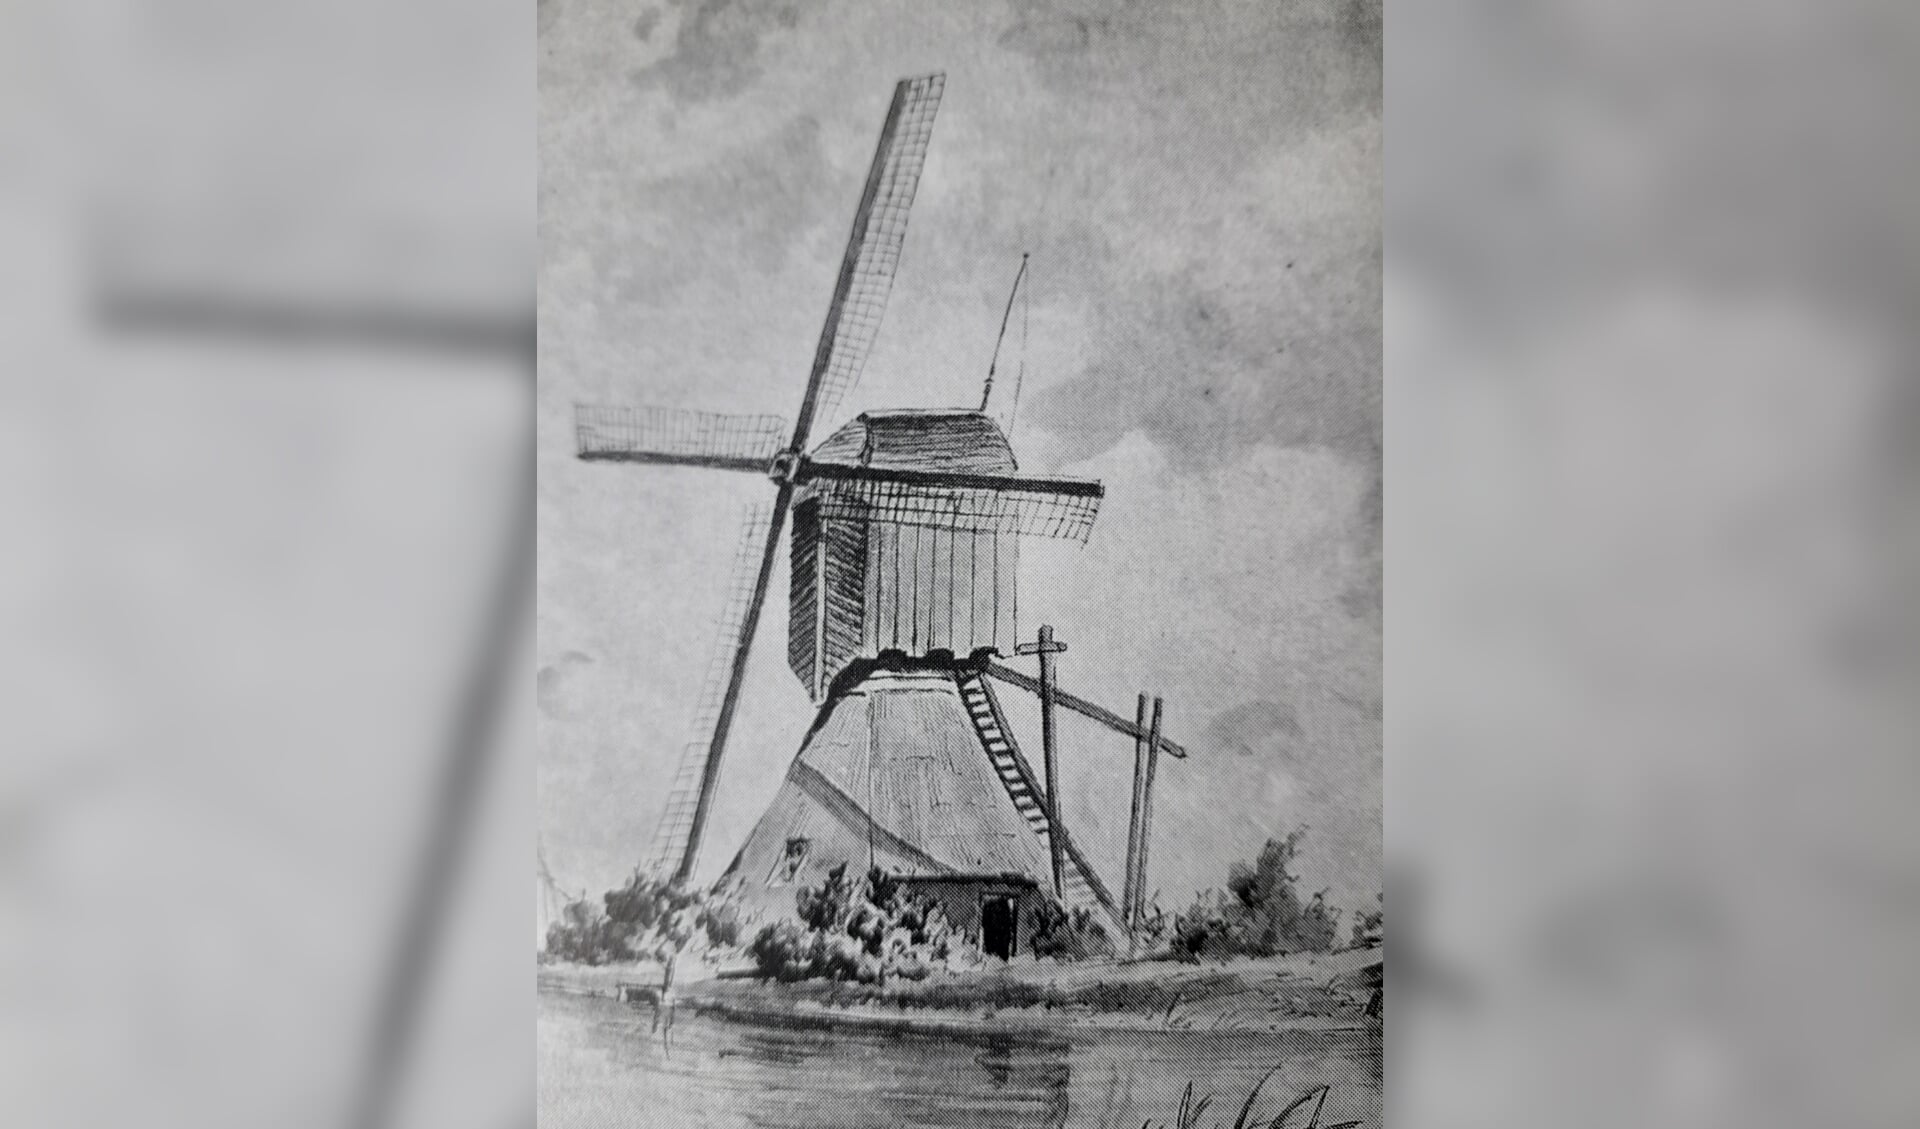 Waterwipmolen, foto van de soort molen die ooit langs de Rotte stond en nu via het doorkijkpaneel tot leven wordt gebracht.